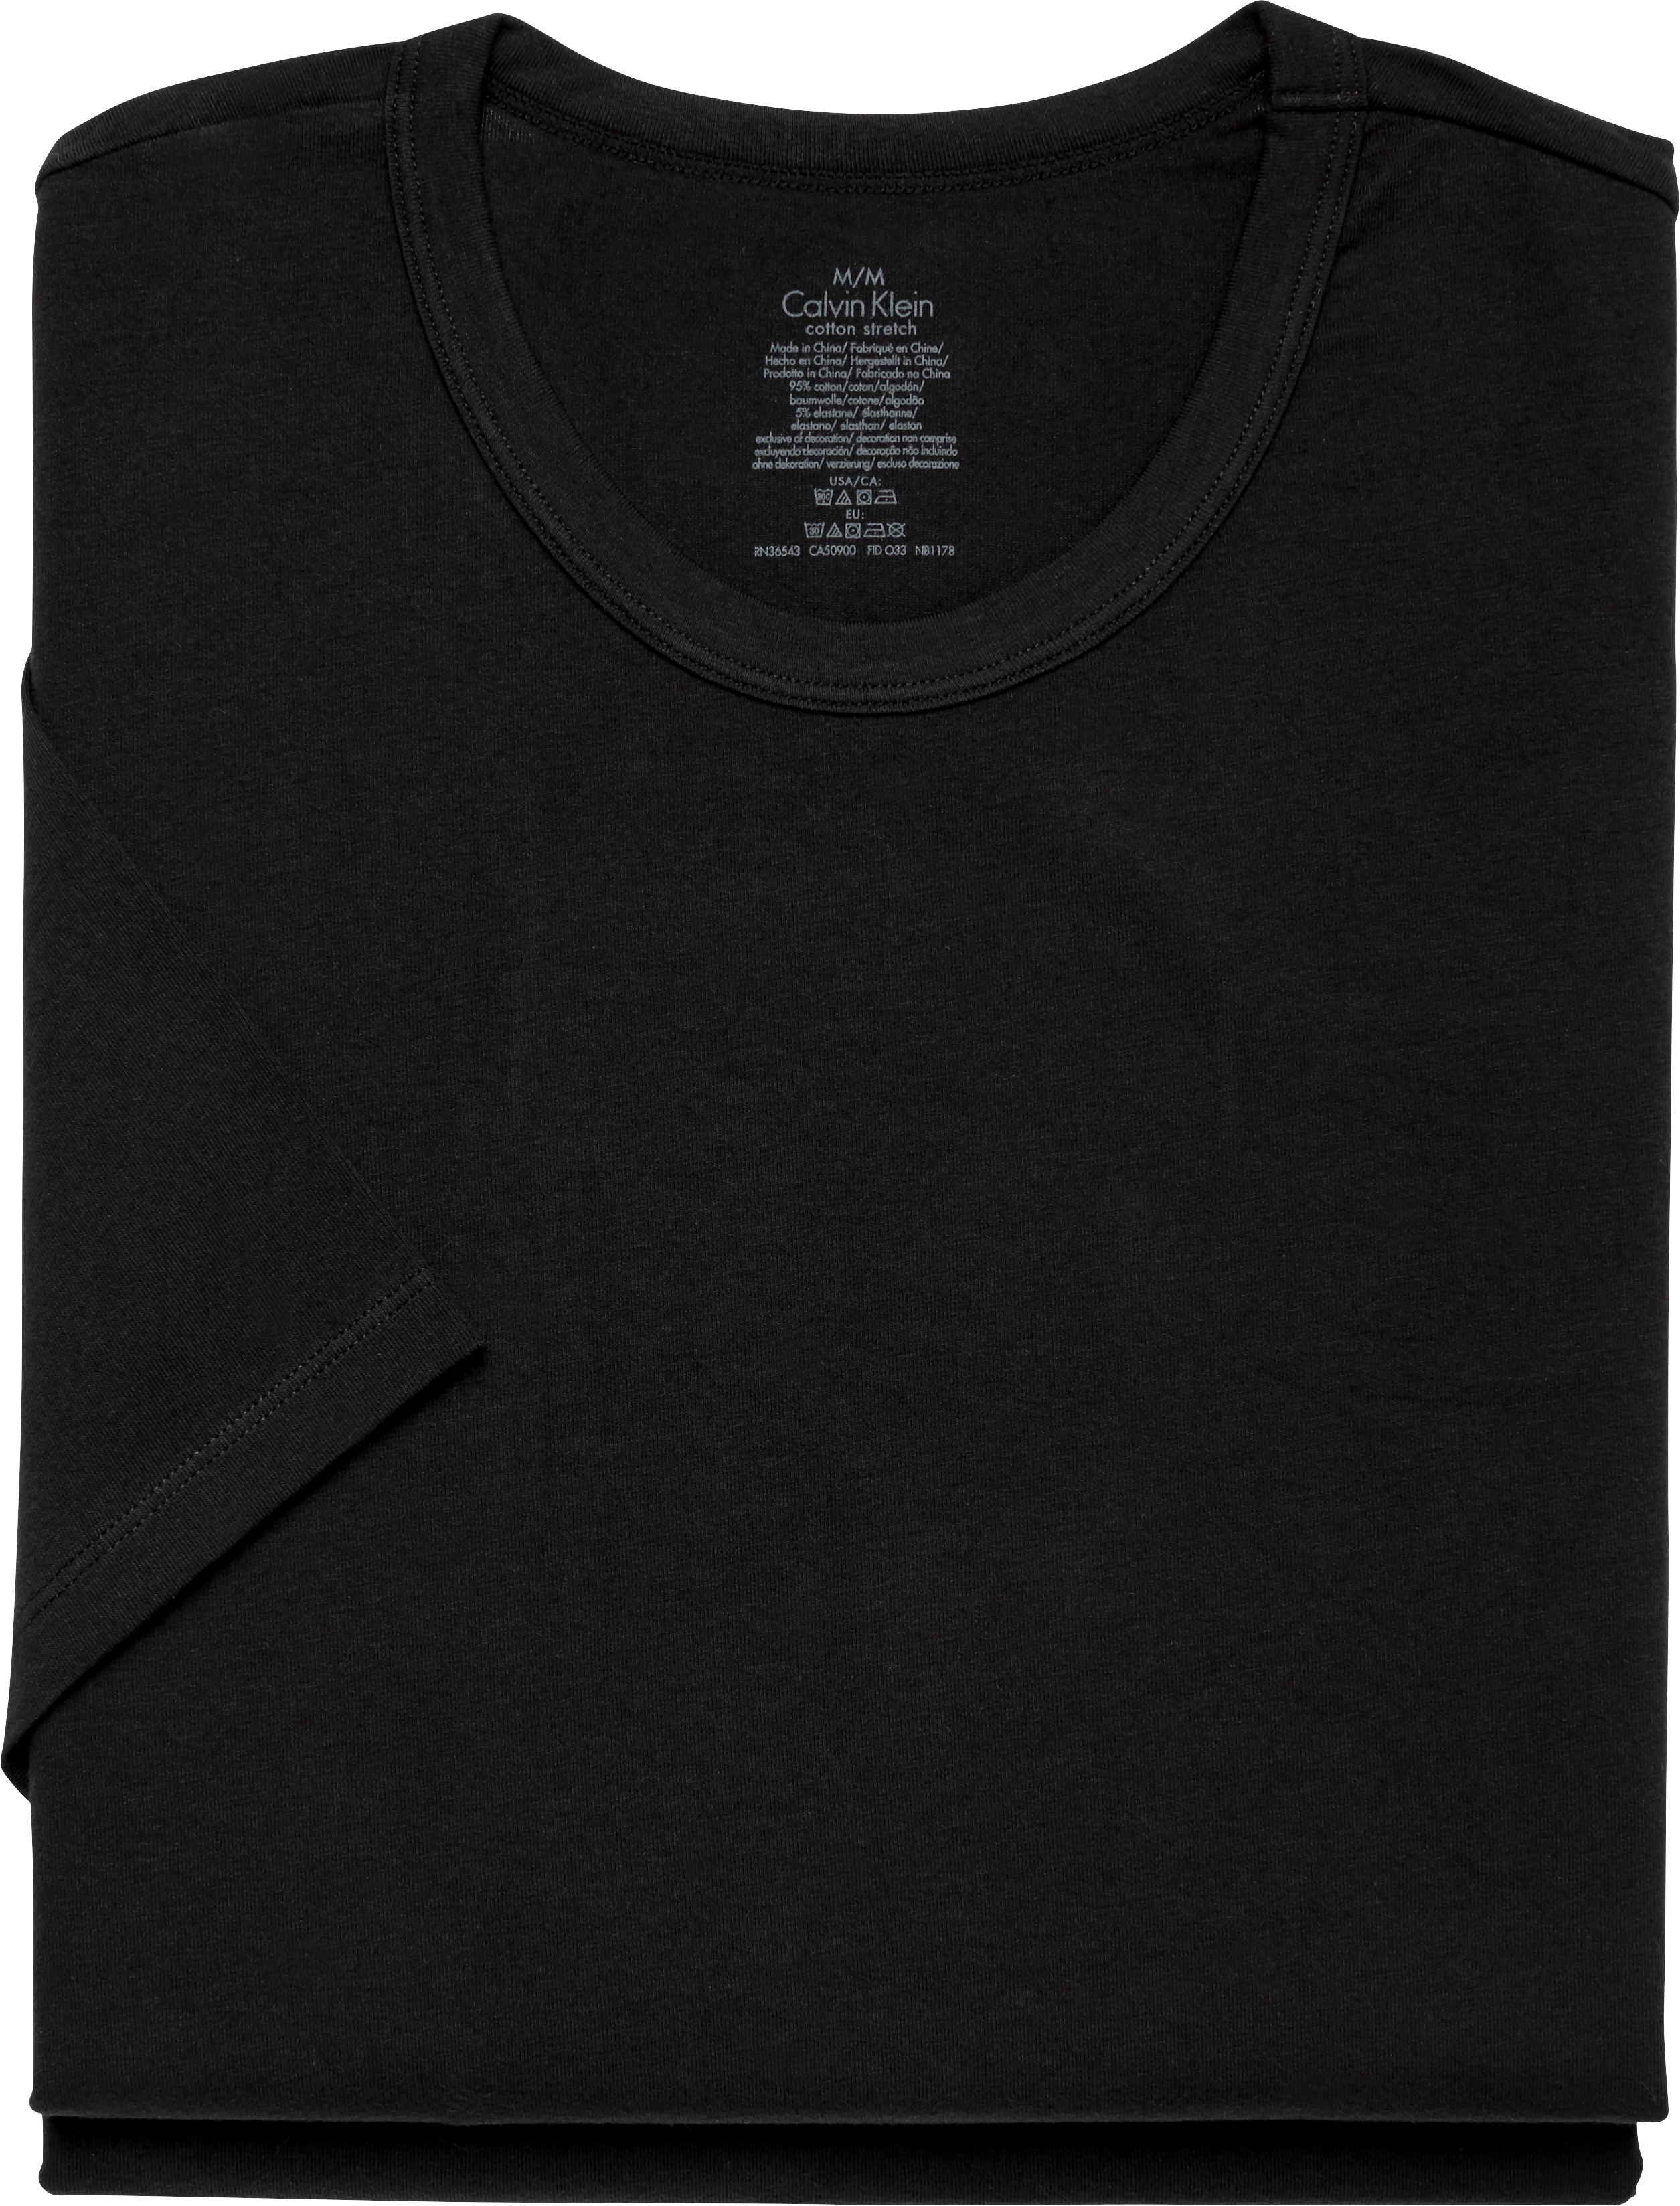 Calvin Klein Crew Neck Tee Shirt 2-Pack | Underwear| Men's Wearhouse